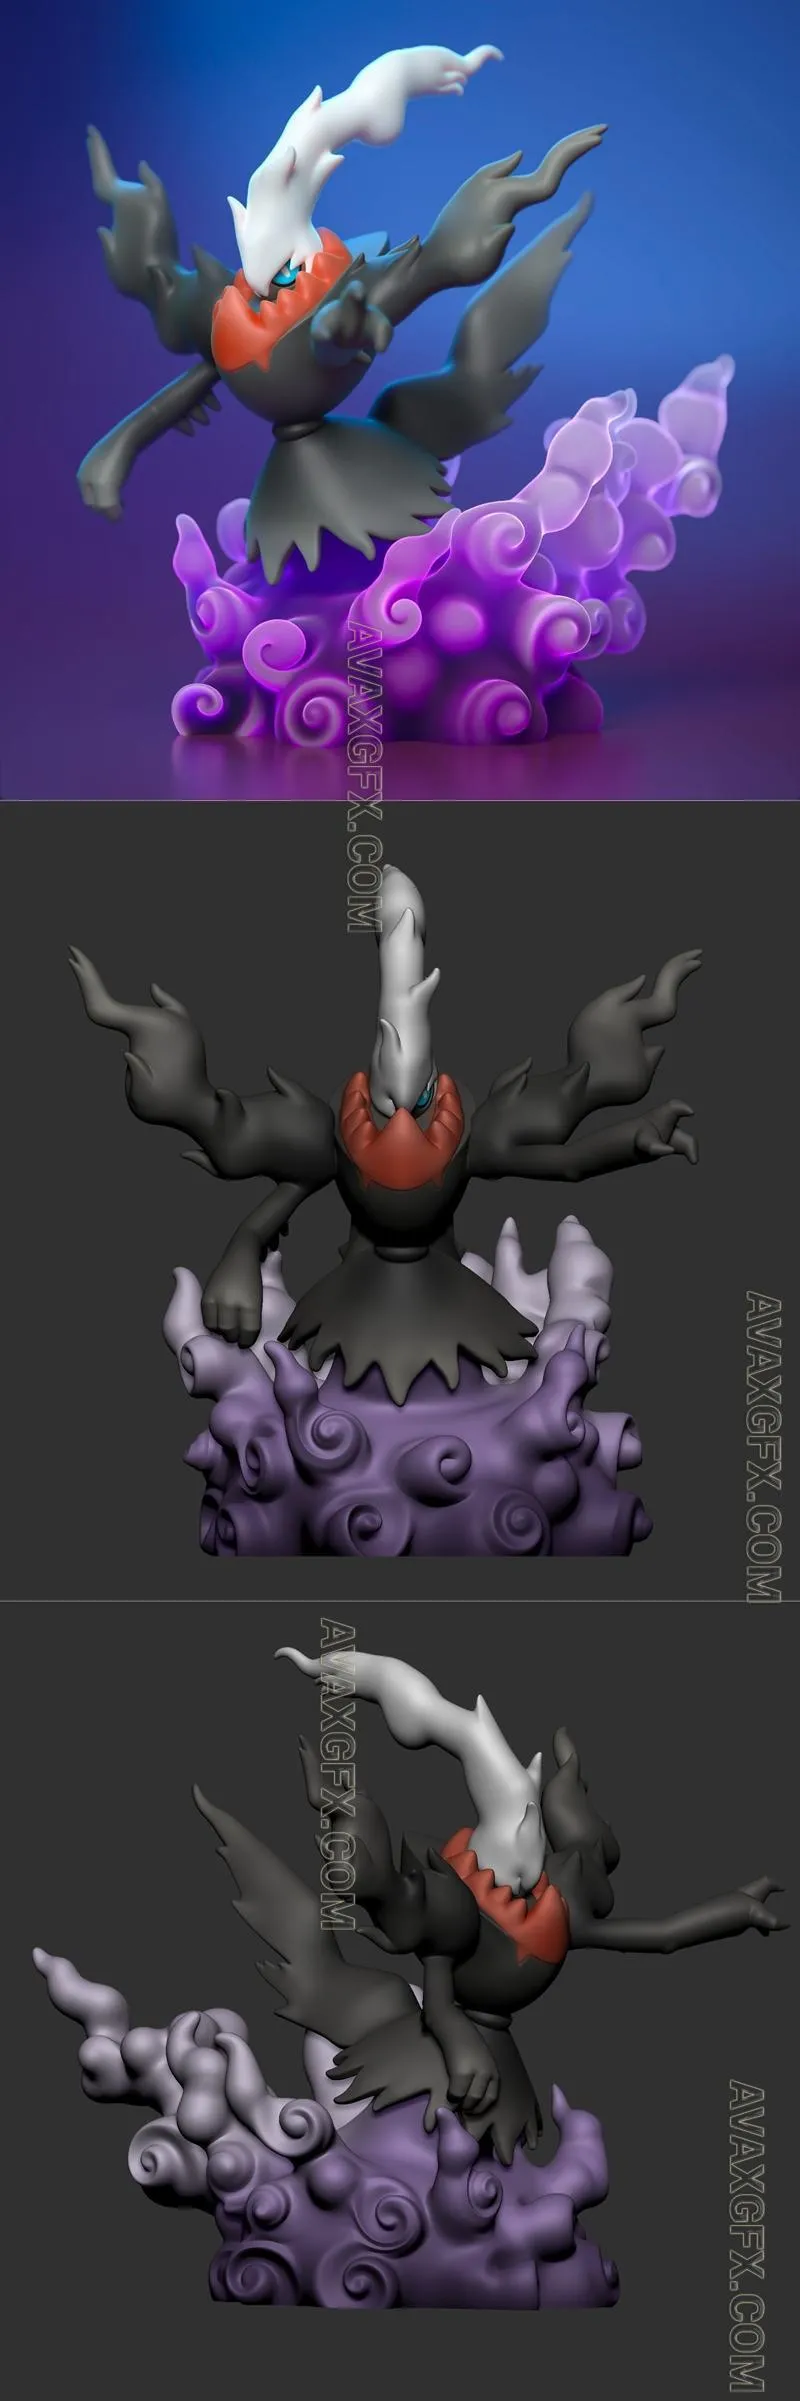 Darkrai Pokemon - STL 3D Model